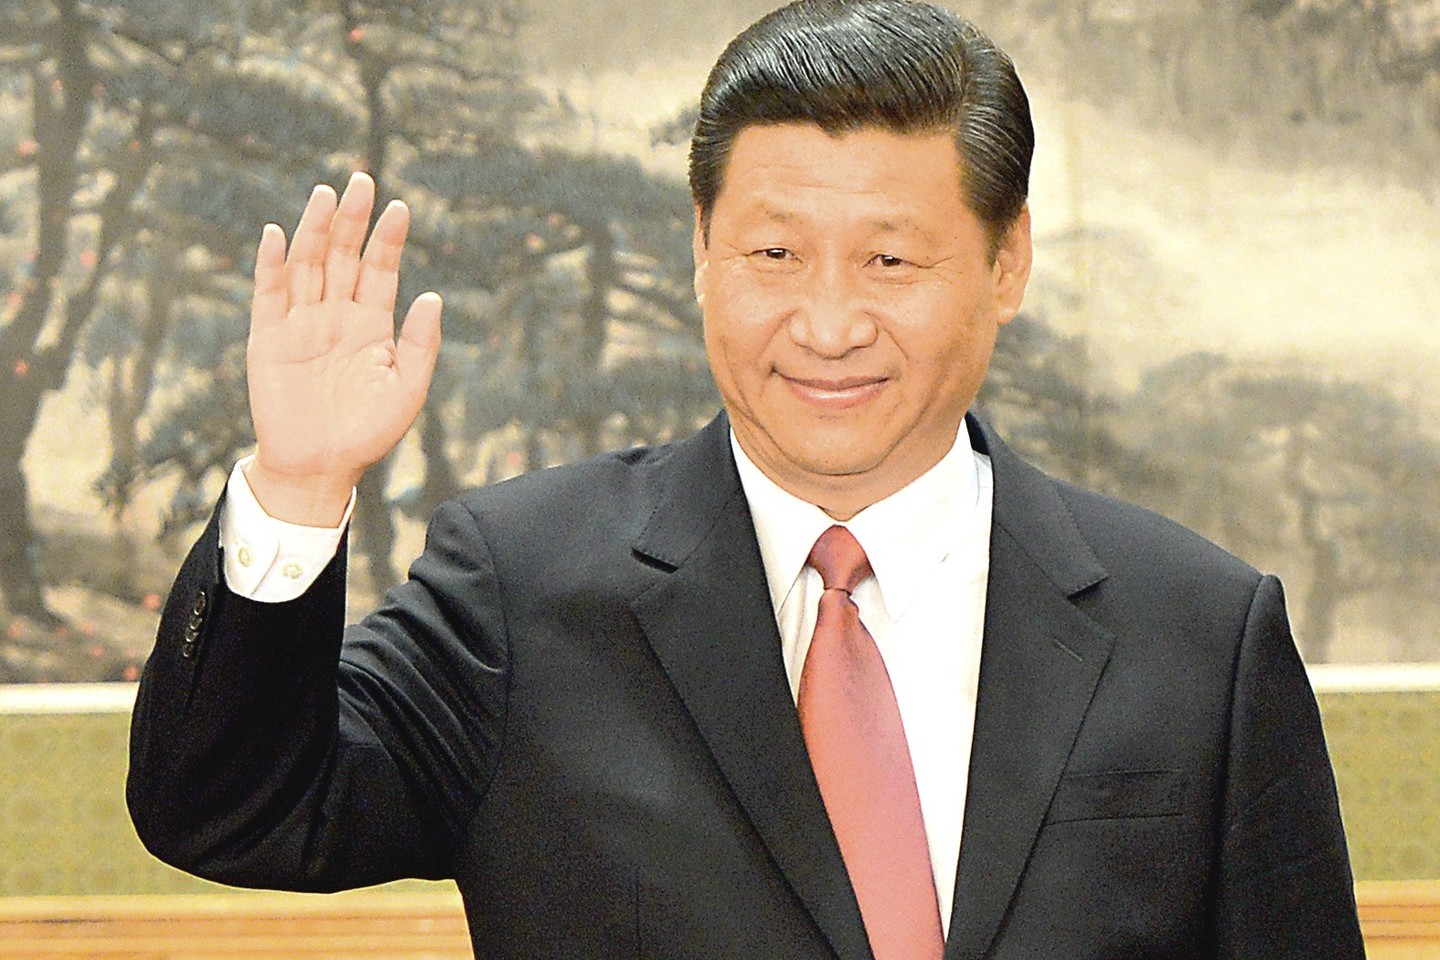 Kinijos prezidentas Xi Jinpingas savo šalyje vis dar labai populiarus, tačiau nedidelė dalis žmonių išdrįsta pasipriešinti jo autoritetui ir diegiamai ideologijai.<br>AFP/„Scanpix“ nuotr.